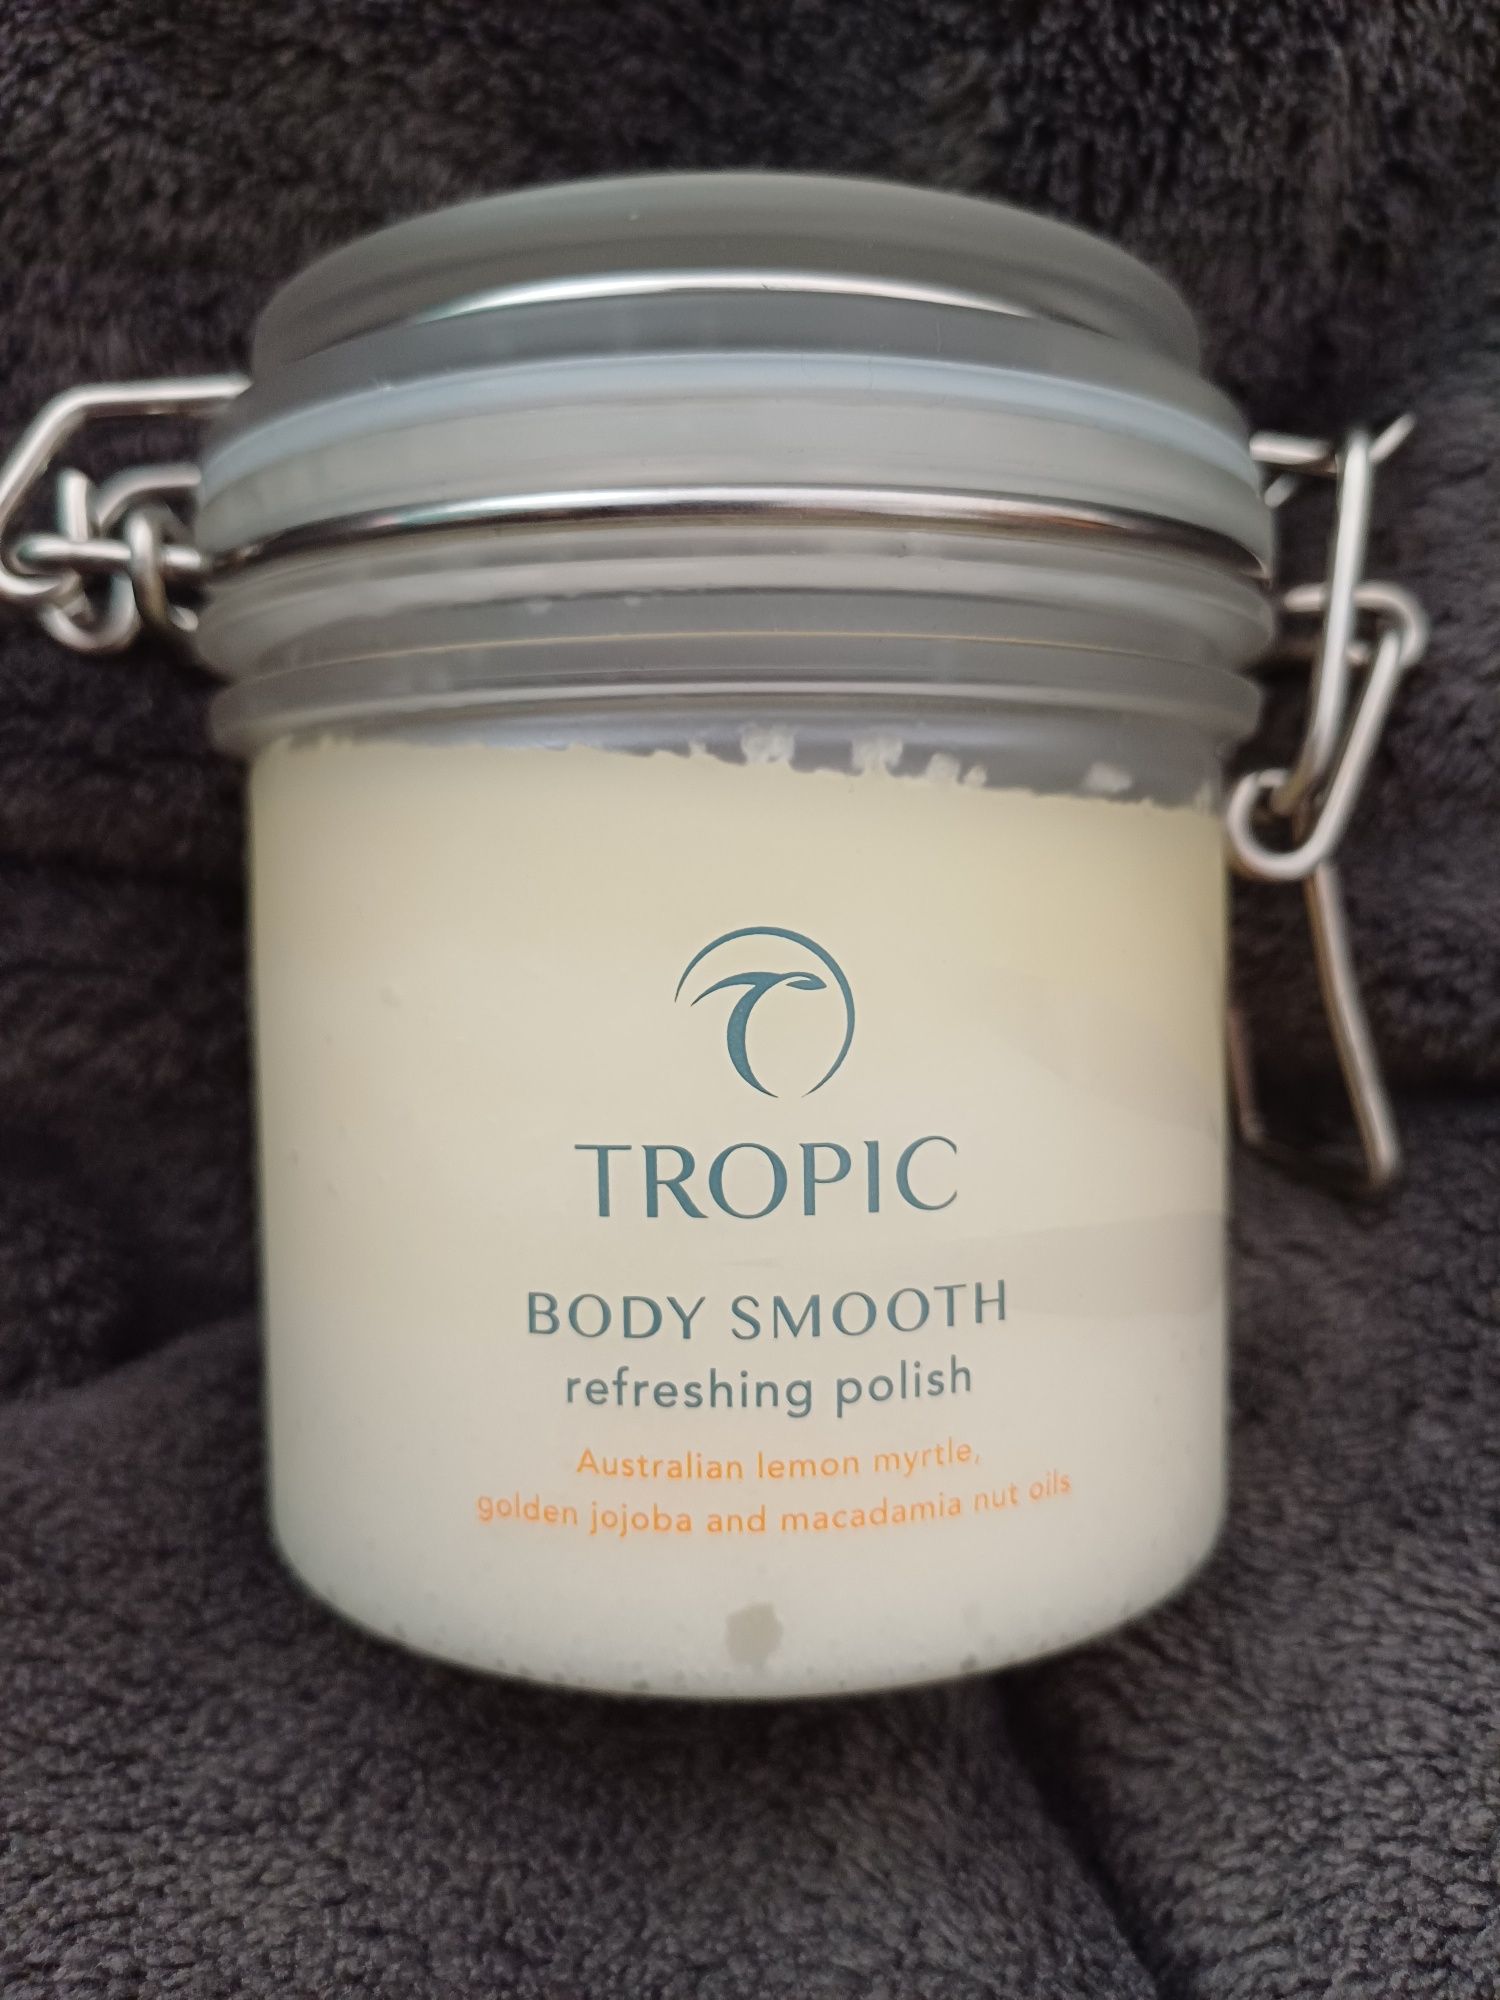 Tropic, Body Smooth, refreshing polish, scrub, peeling